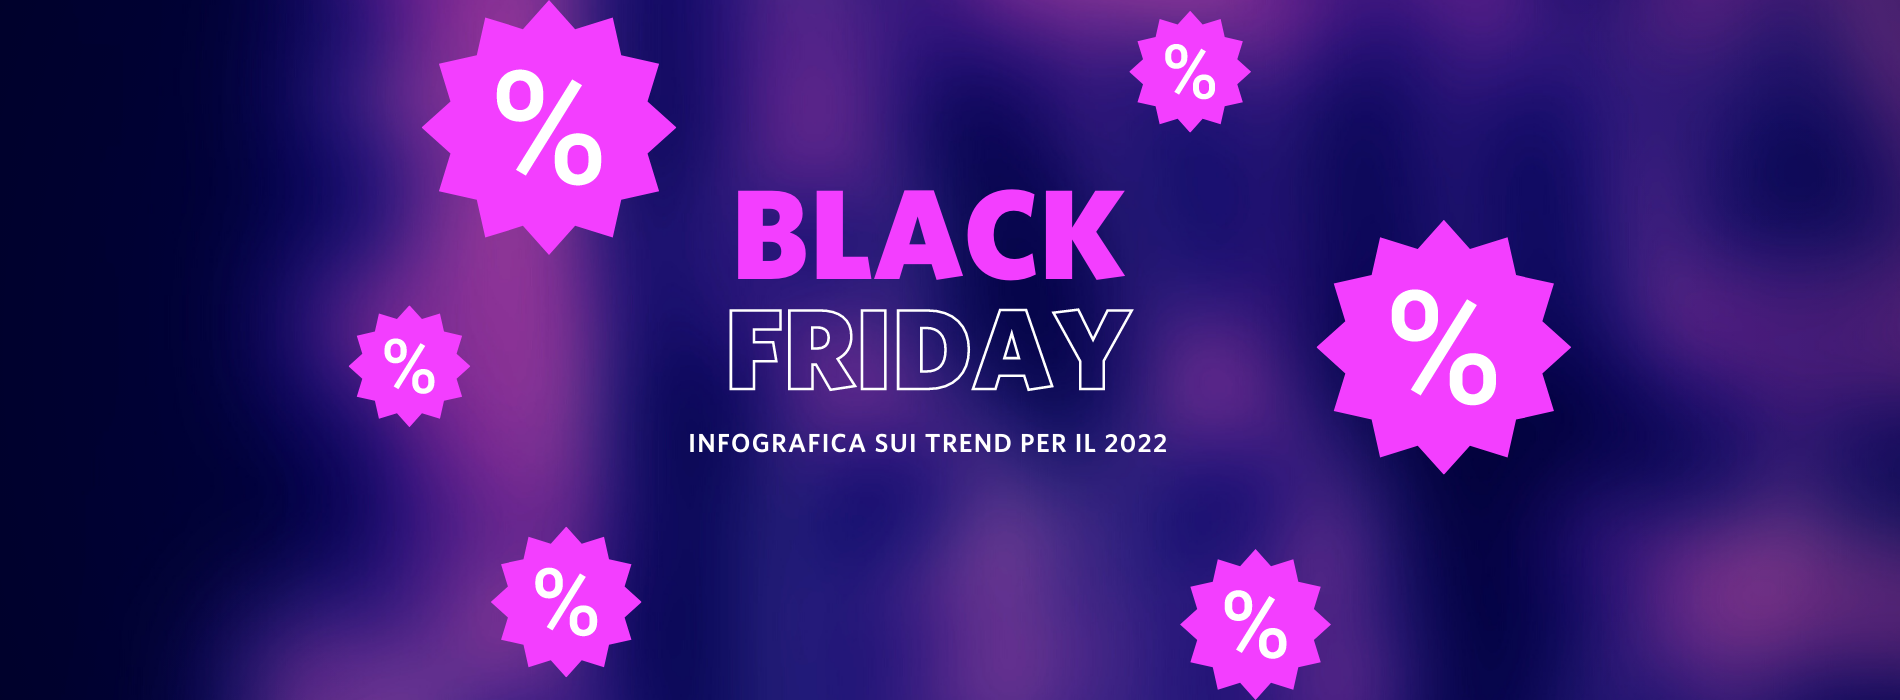 Infografica su trend e statistiche chiave del Black Friday 2022